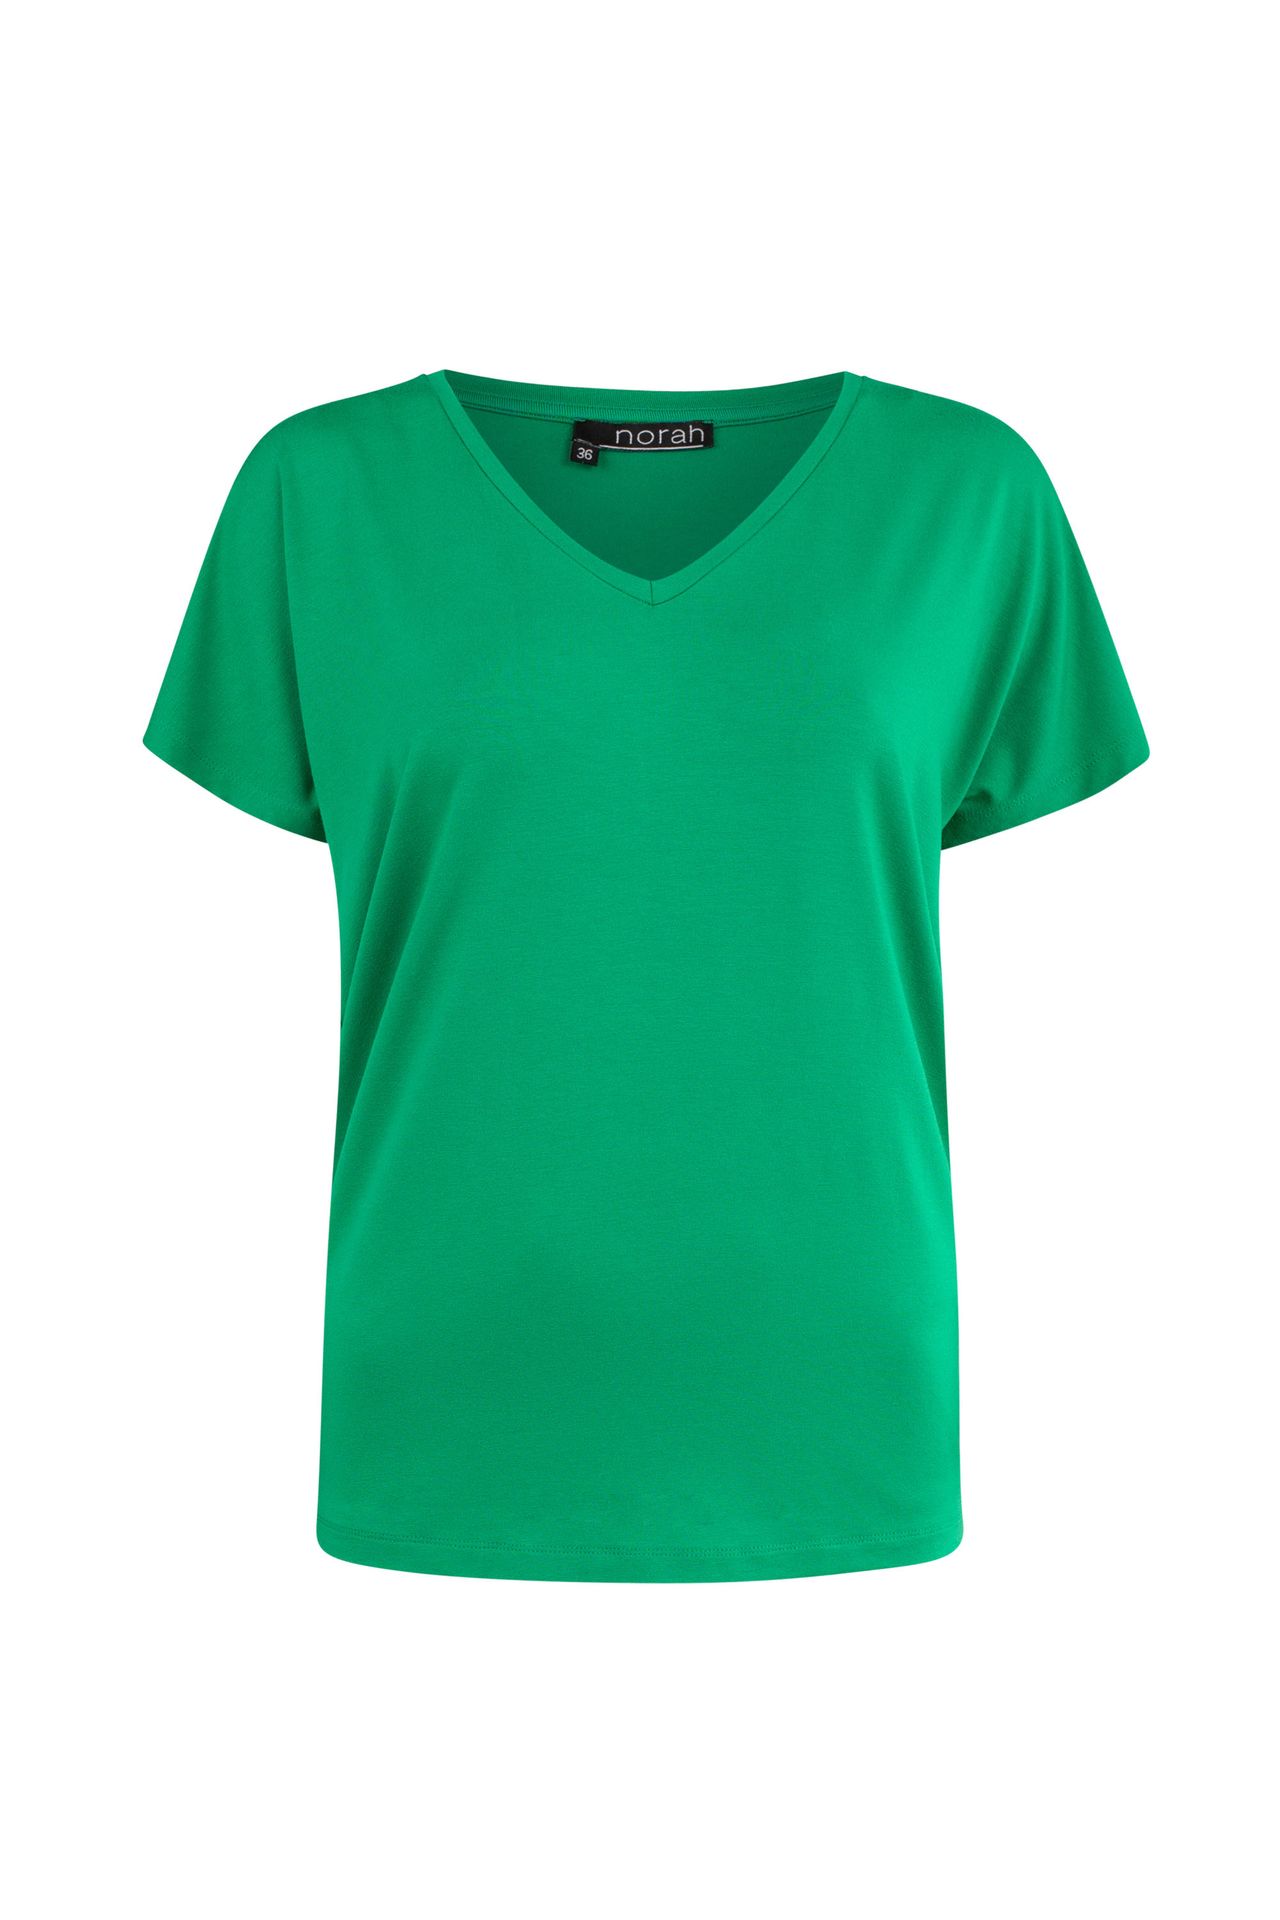 Norah Shirt Maral groen apple green 208968-505